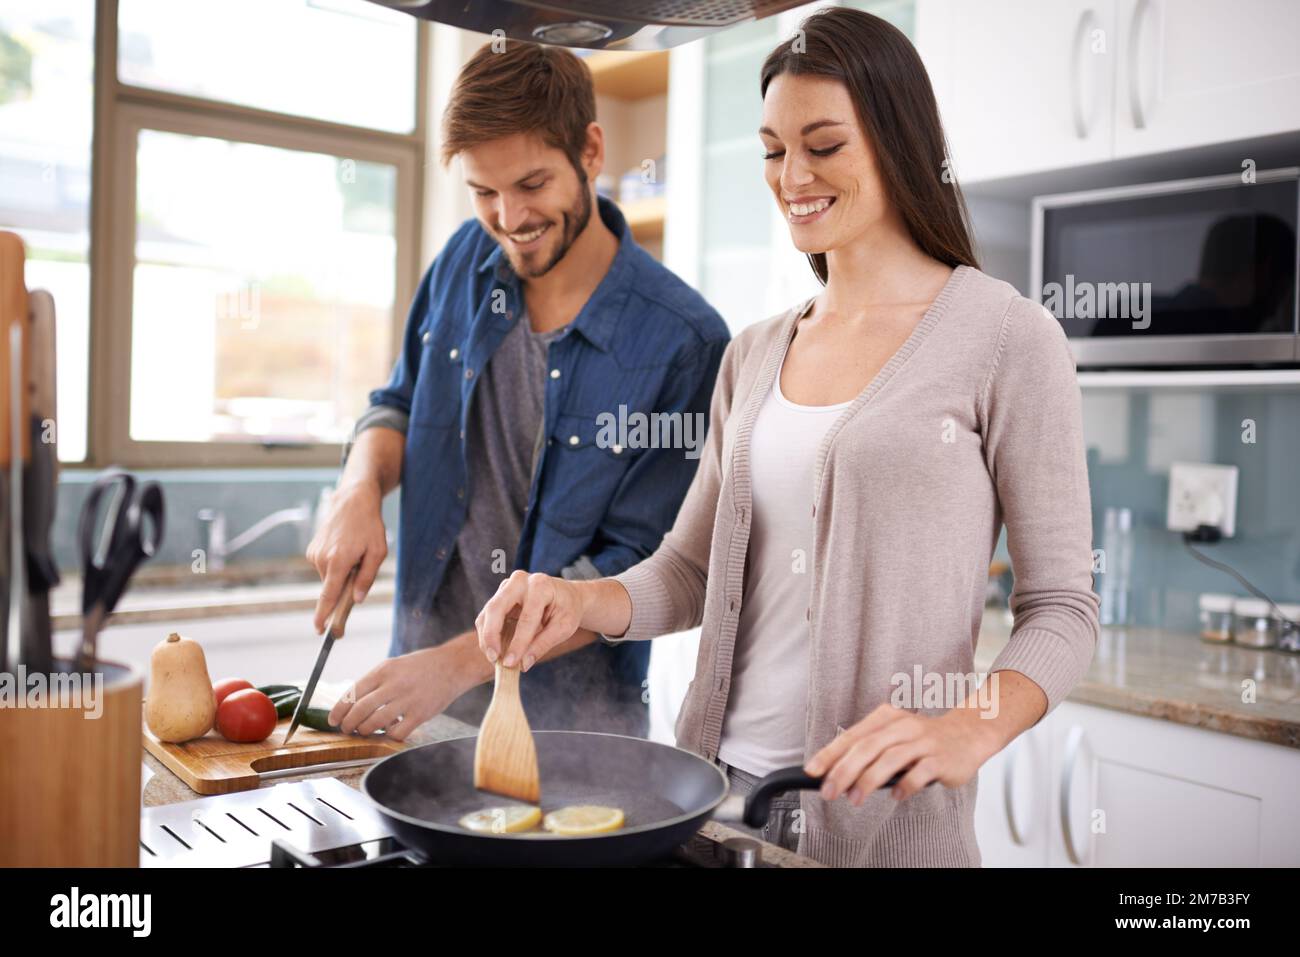 Preparar una deliciosa comida en casa. Una pareja joven haciendo la cena juntos en casa. Foto de stock